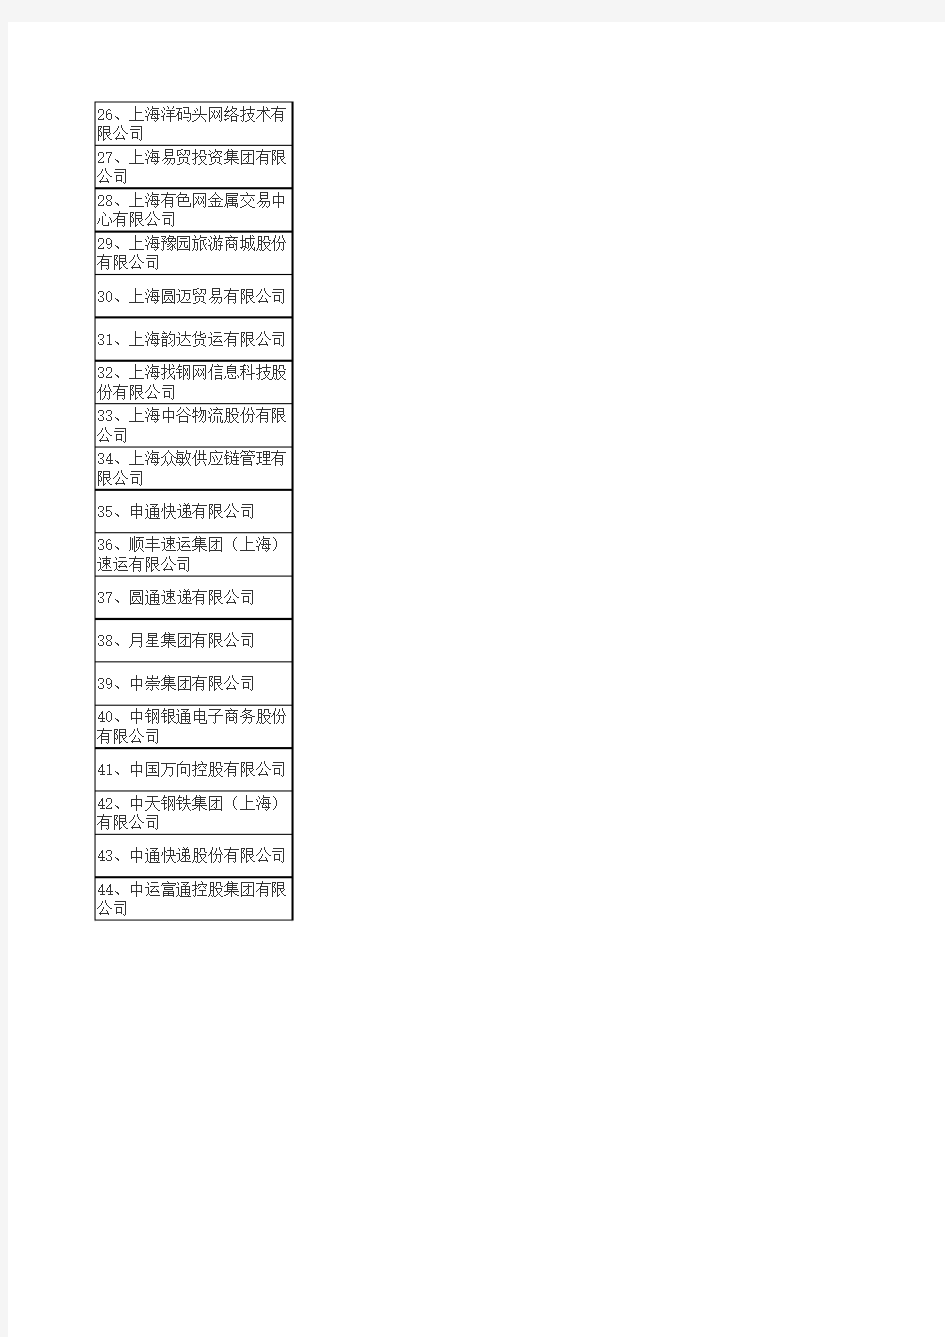 上海首批44家民营企业总部名单